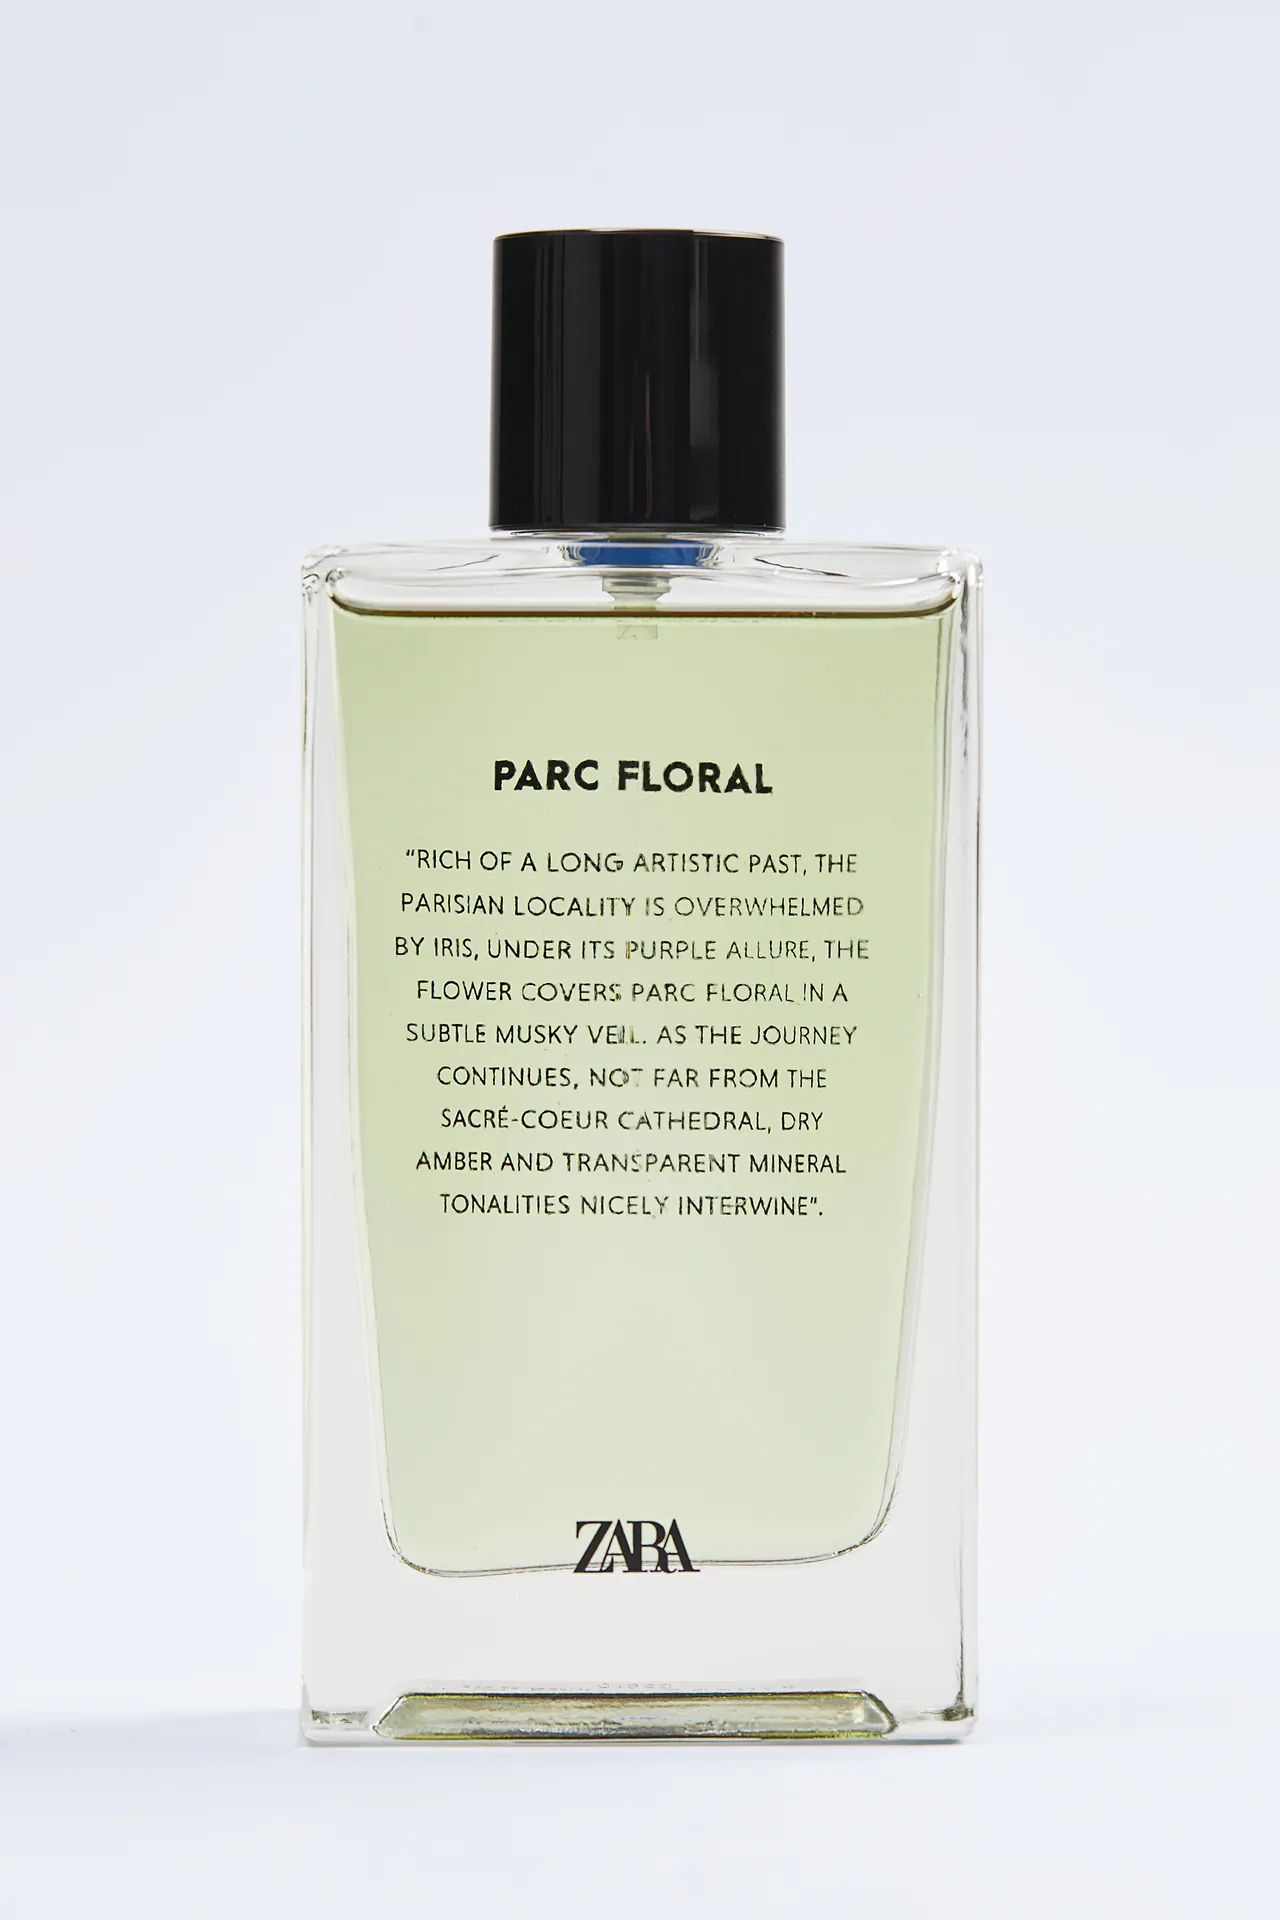 Parc Floral Zara Parfum - ein neues Parfum für Frauen und Männer 2020